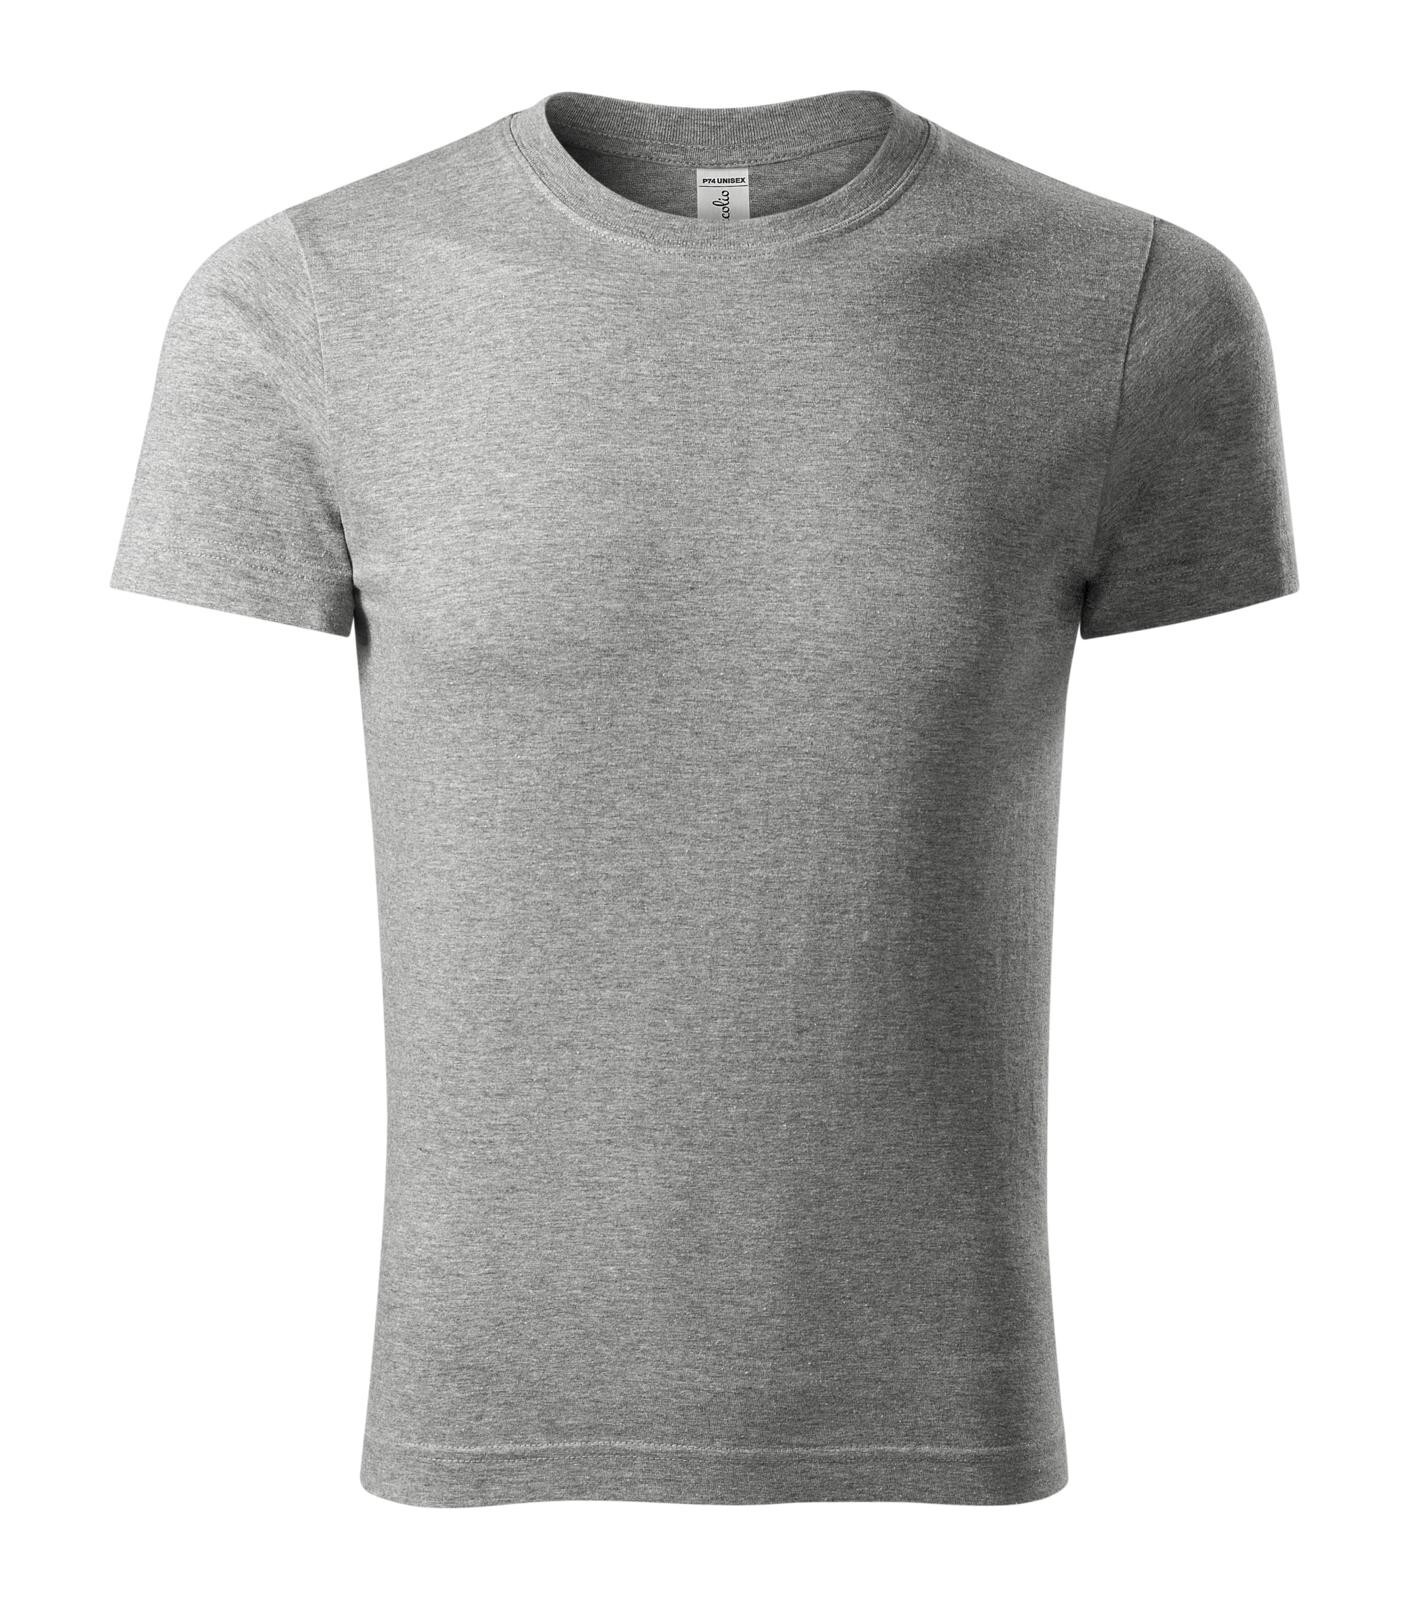 Unisex bavlnené tričko Piccolio Peak P74 - veľkosť: S, farba: tmavosivý melír